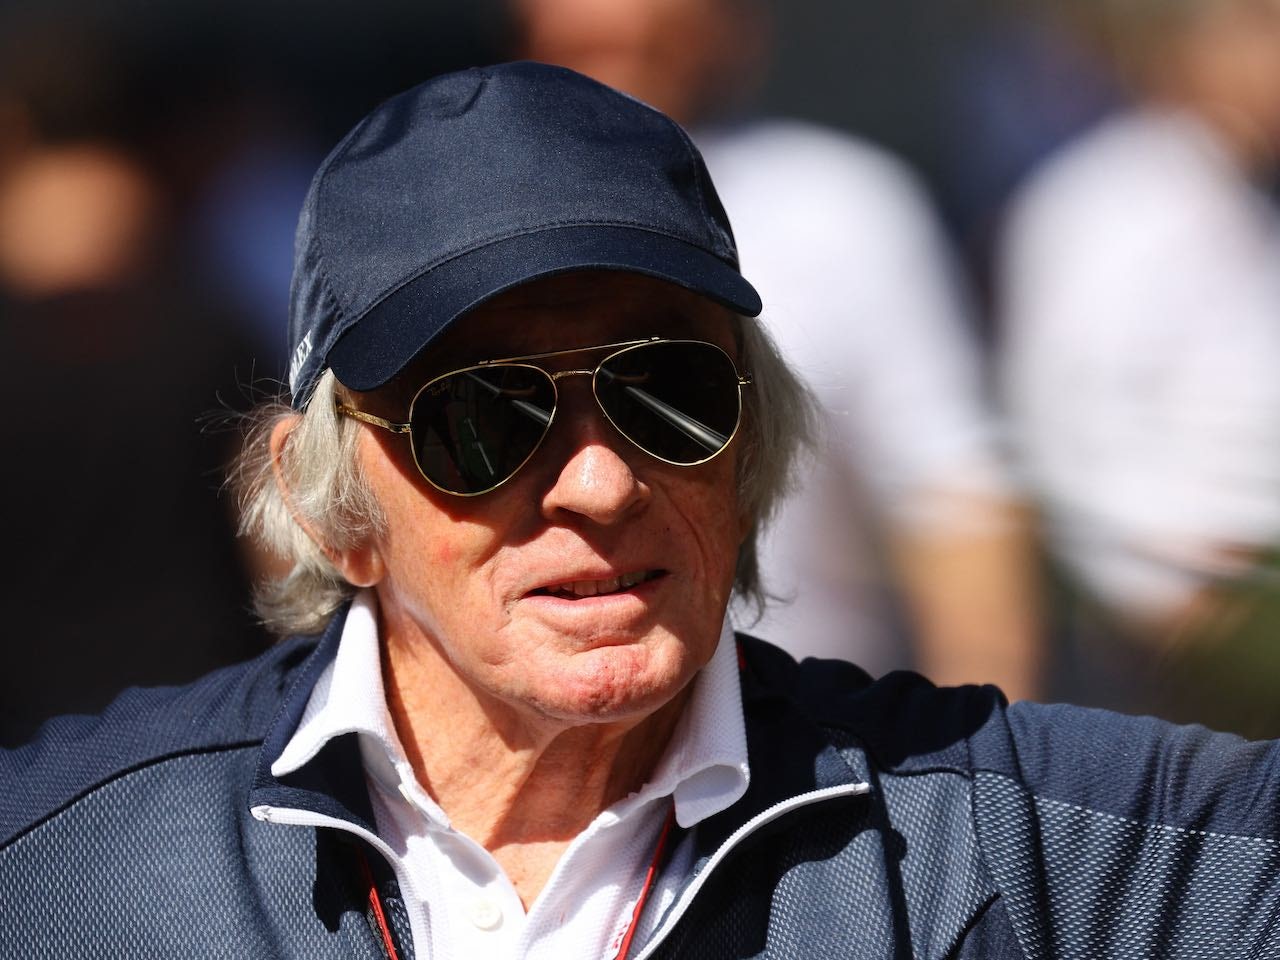 Andretti father, son already F1 'insiders'